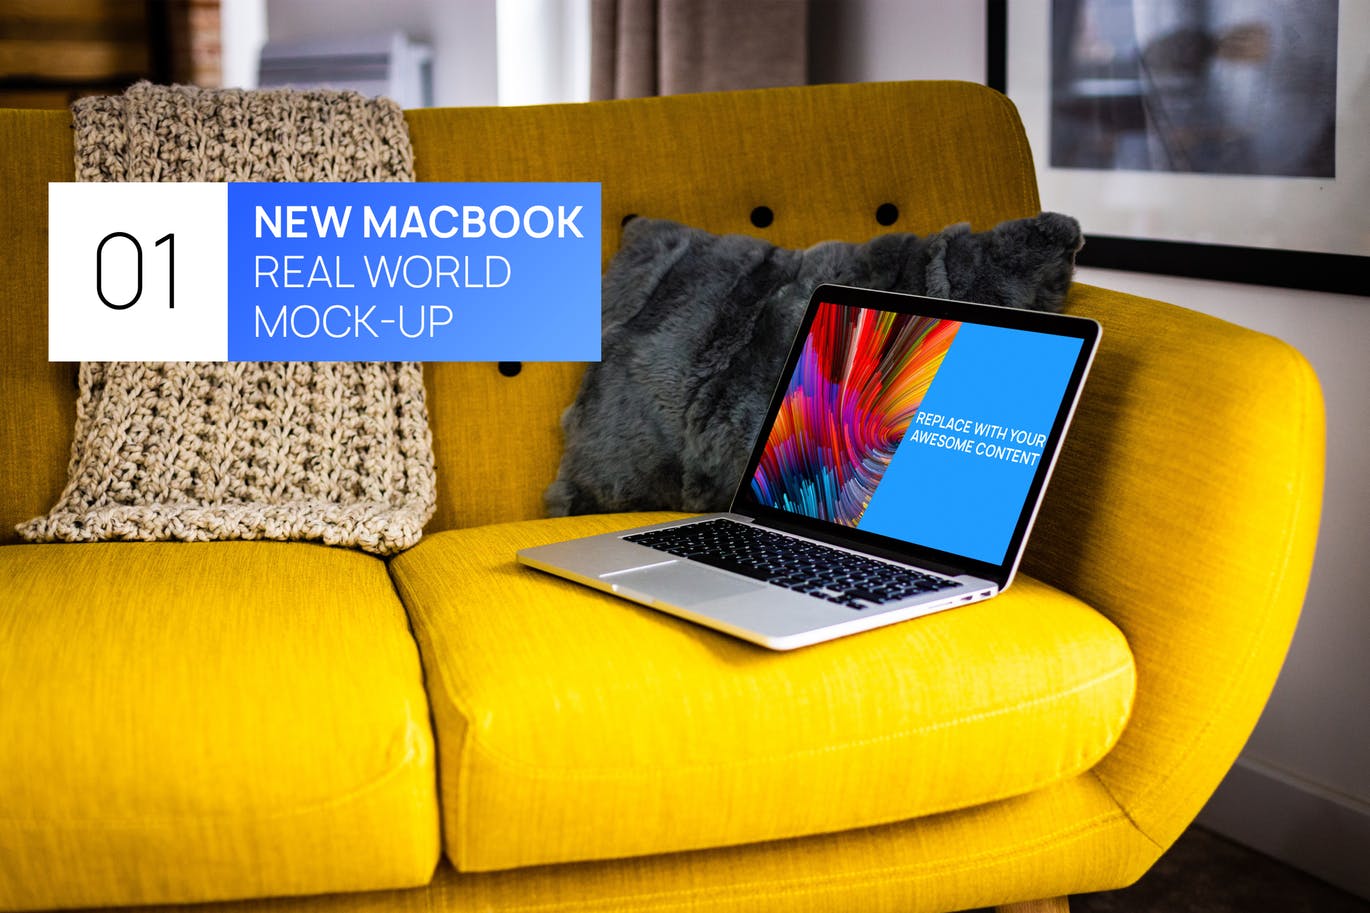 布艺沙发场景MacBook视网膜屏演示第一素材精选样机模板 MacBook Retina on Bright Sofa Real World Mock-up插图